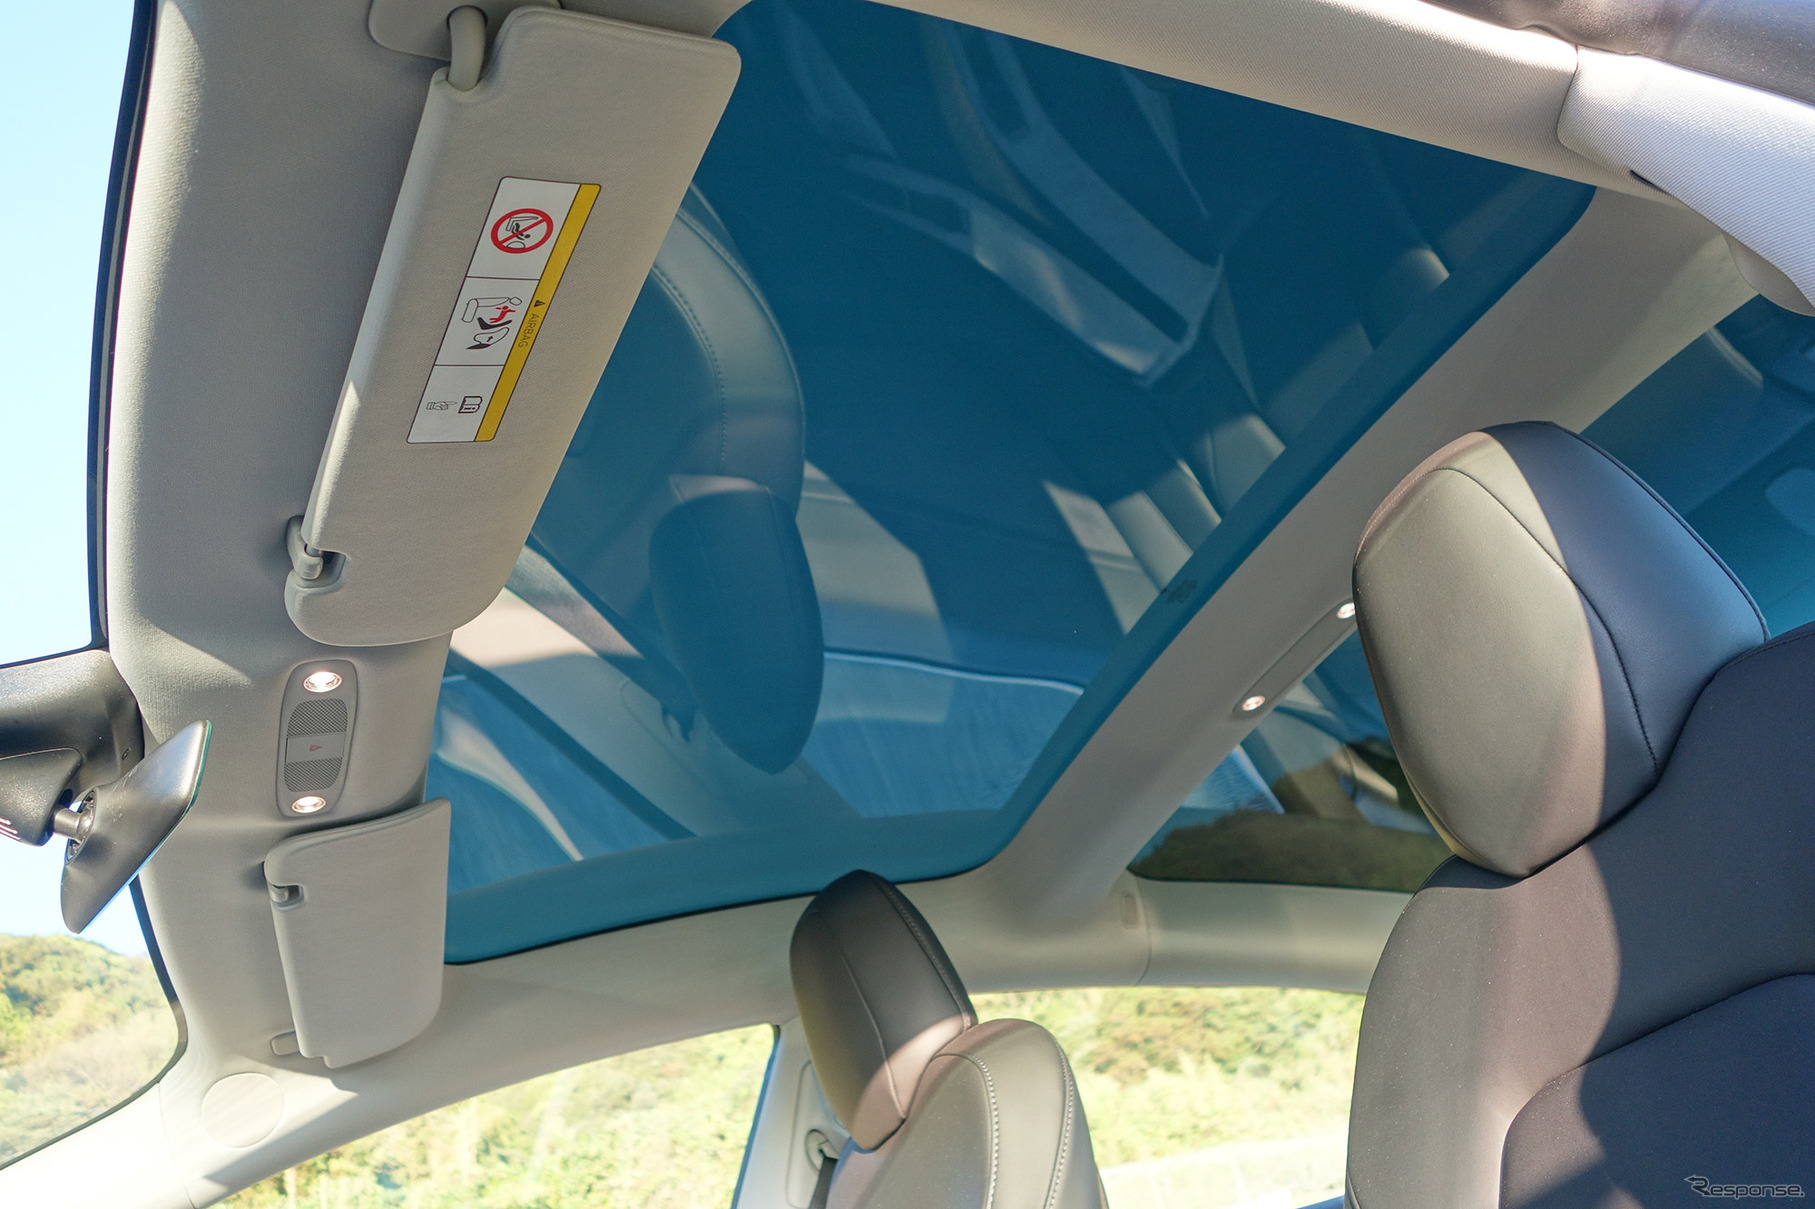 グラストップは車内を明るくするのに大いに貢献した。ただし夏季はそれなりに暑さを感じるであろう。